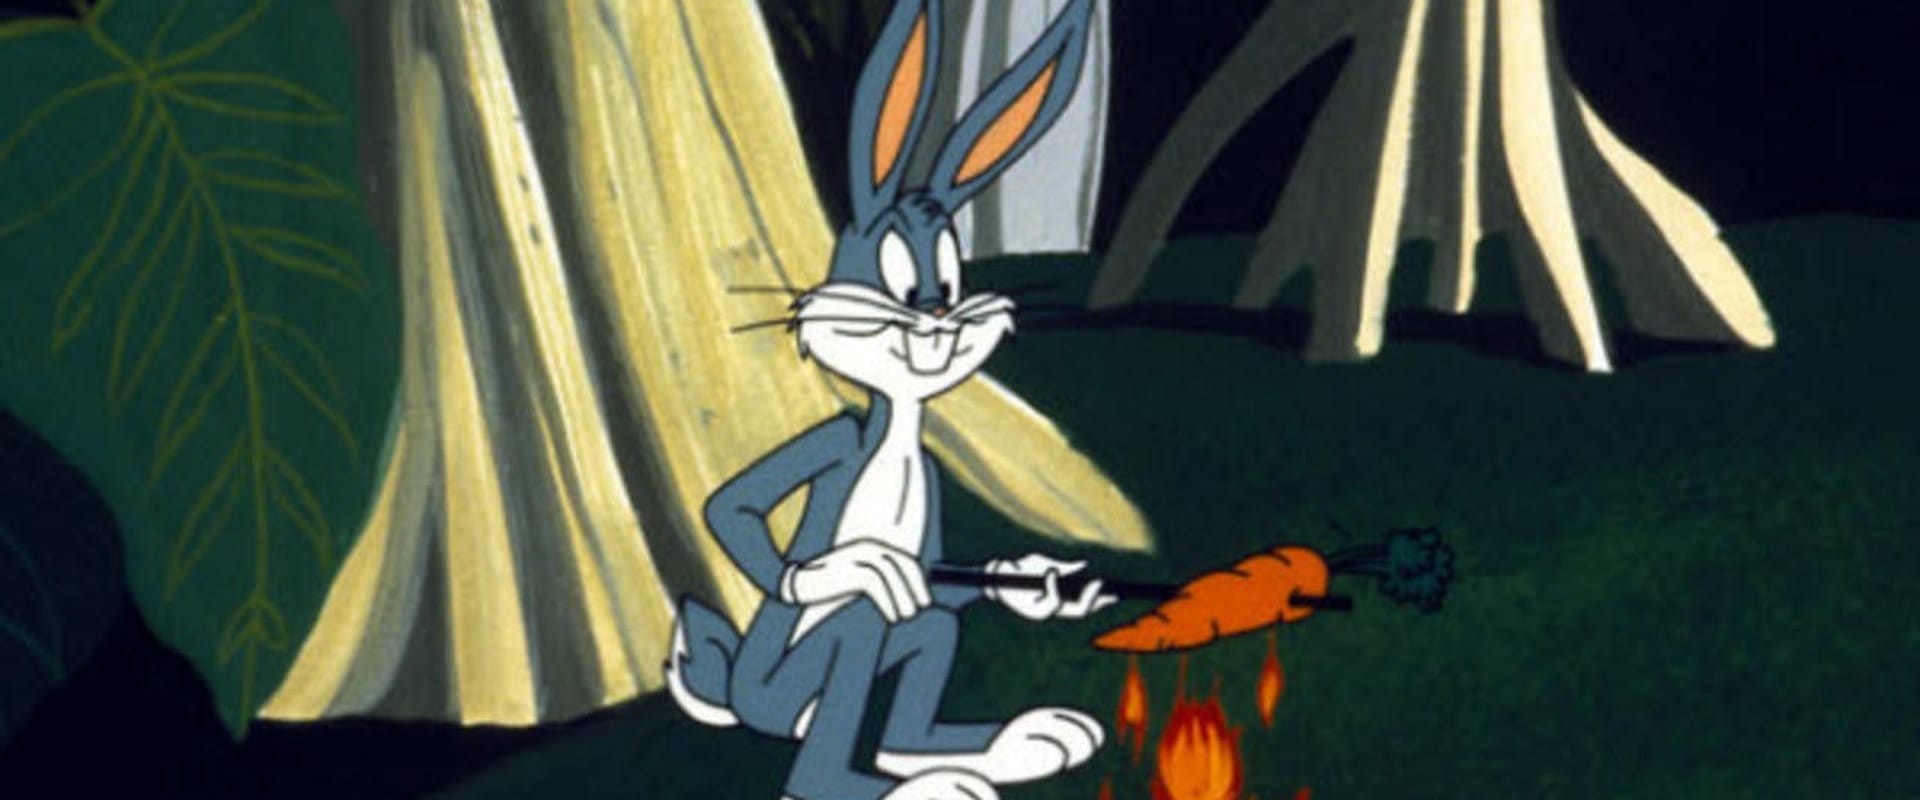 Los 1001 cuentos de Bugs Bunny